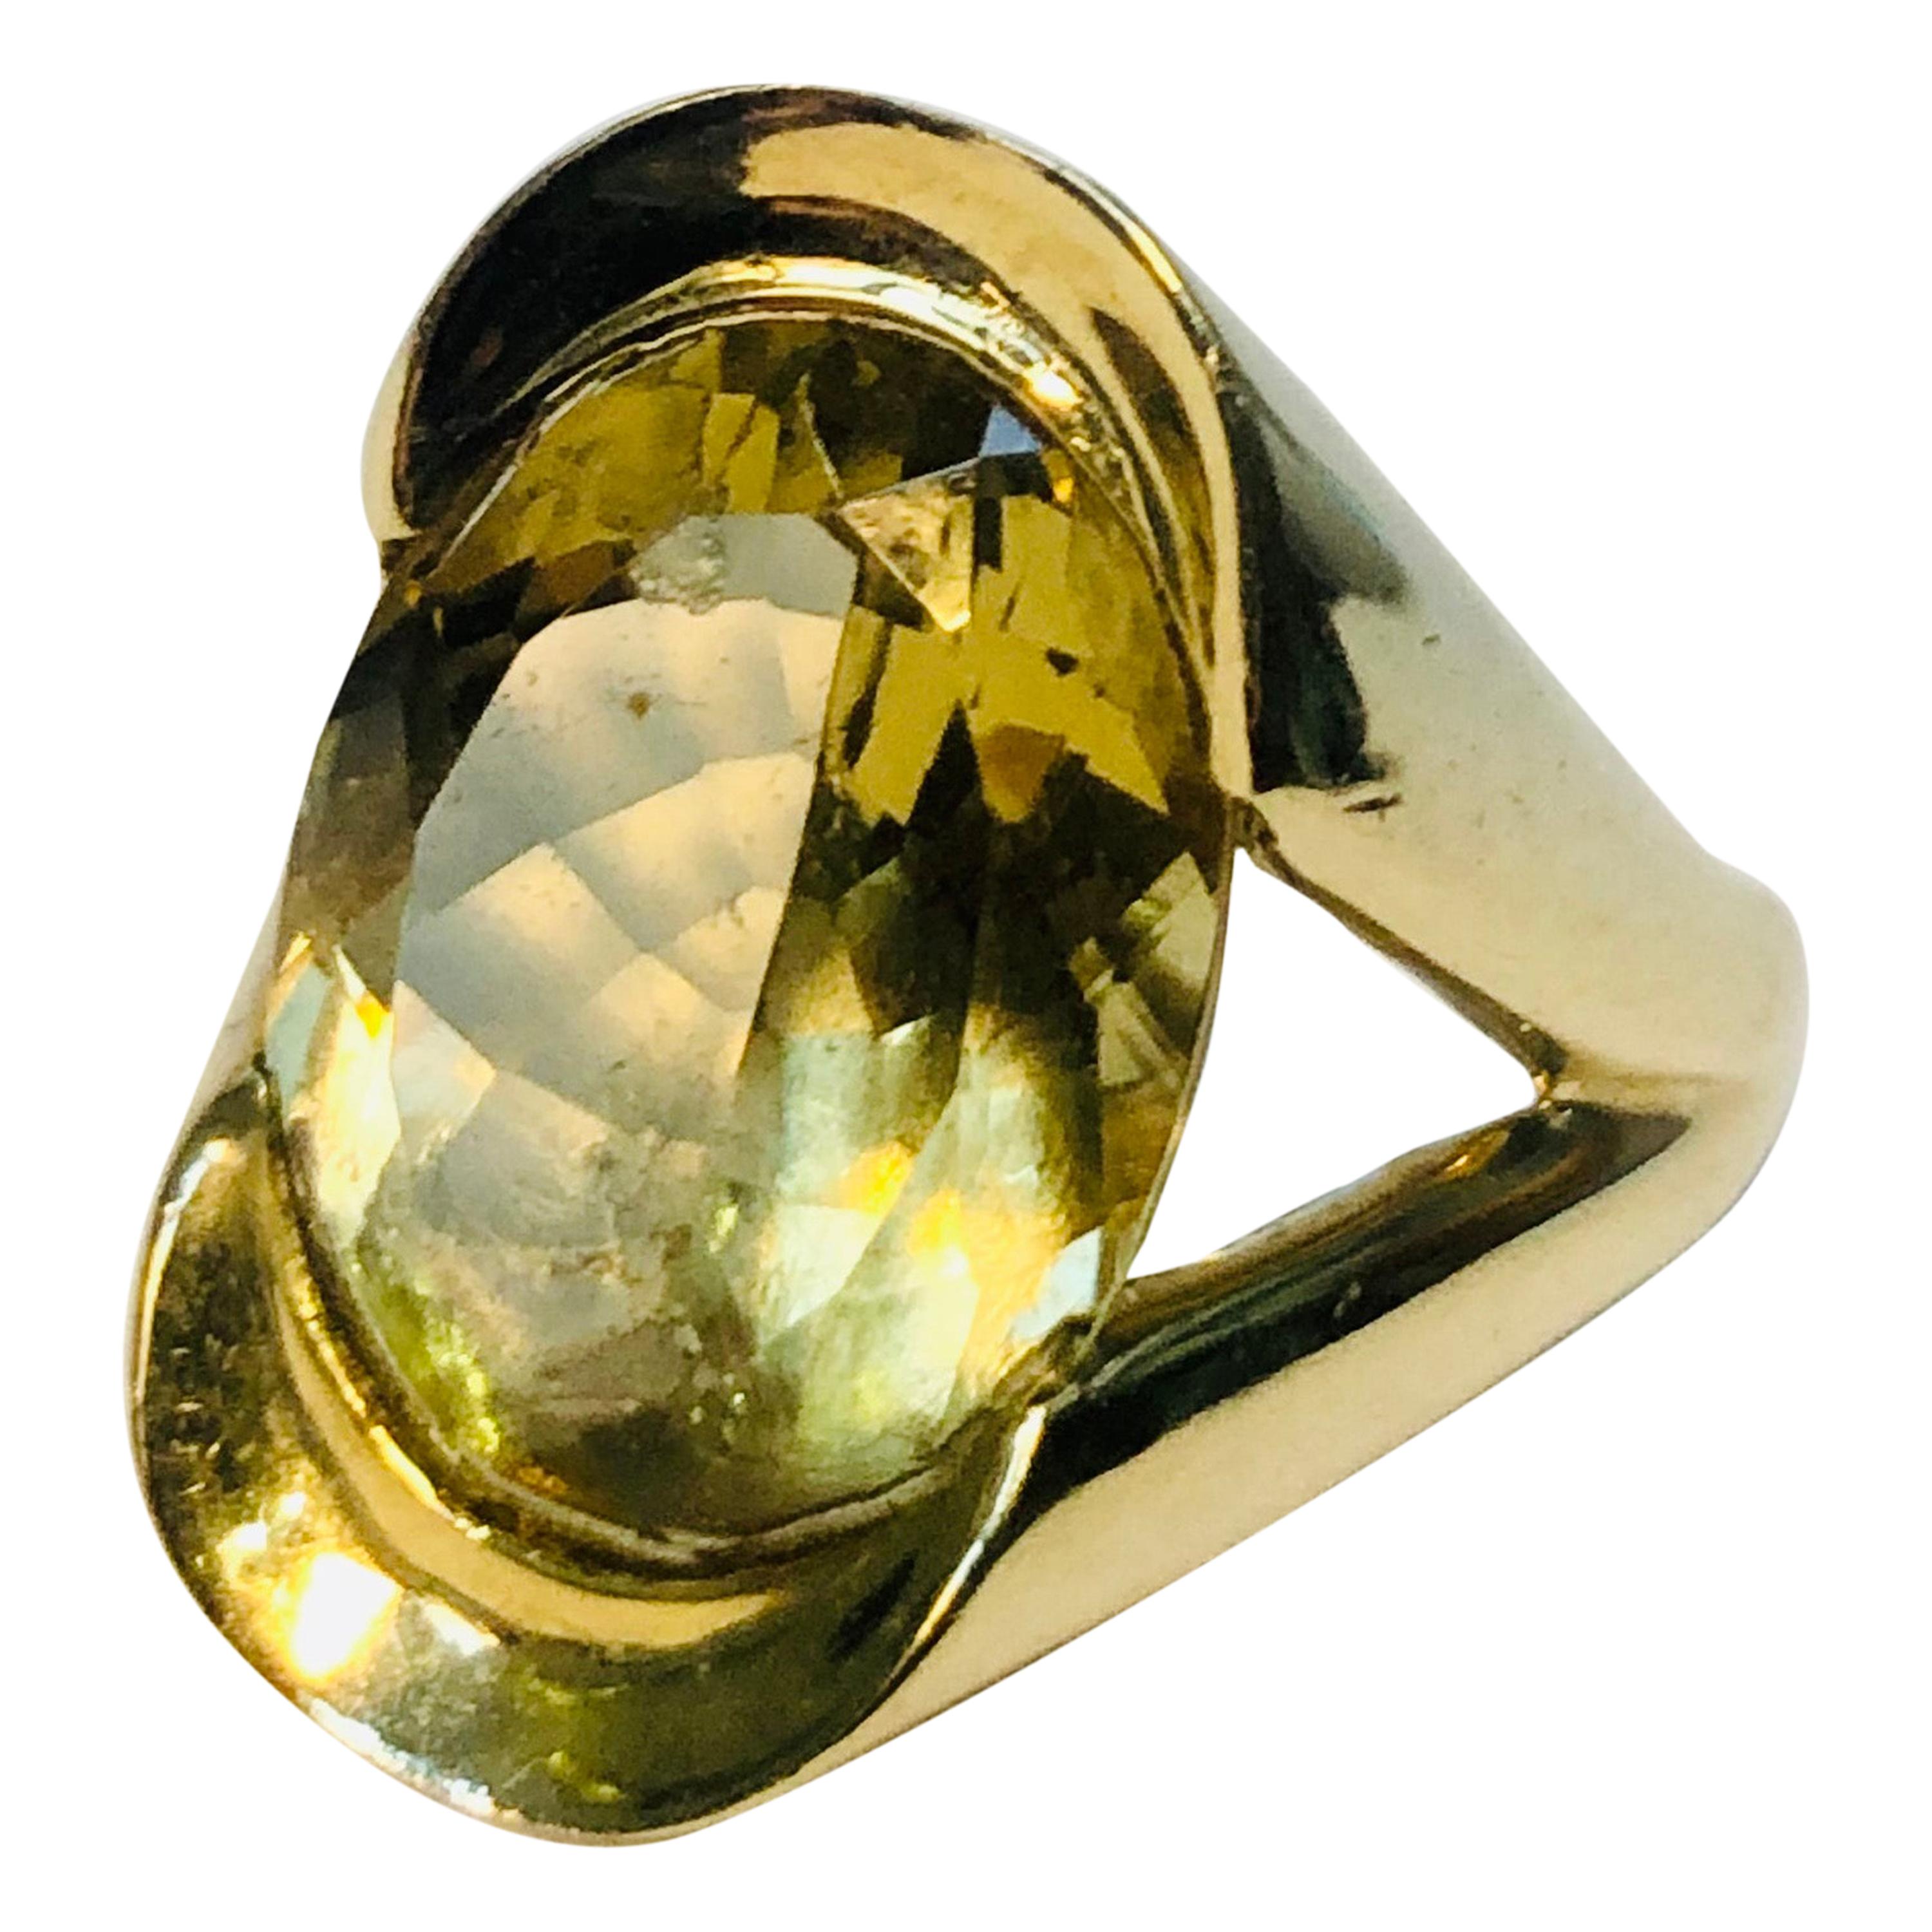 Large Oval Citrine Cocktail Ring, 9 Karat Gold